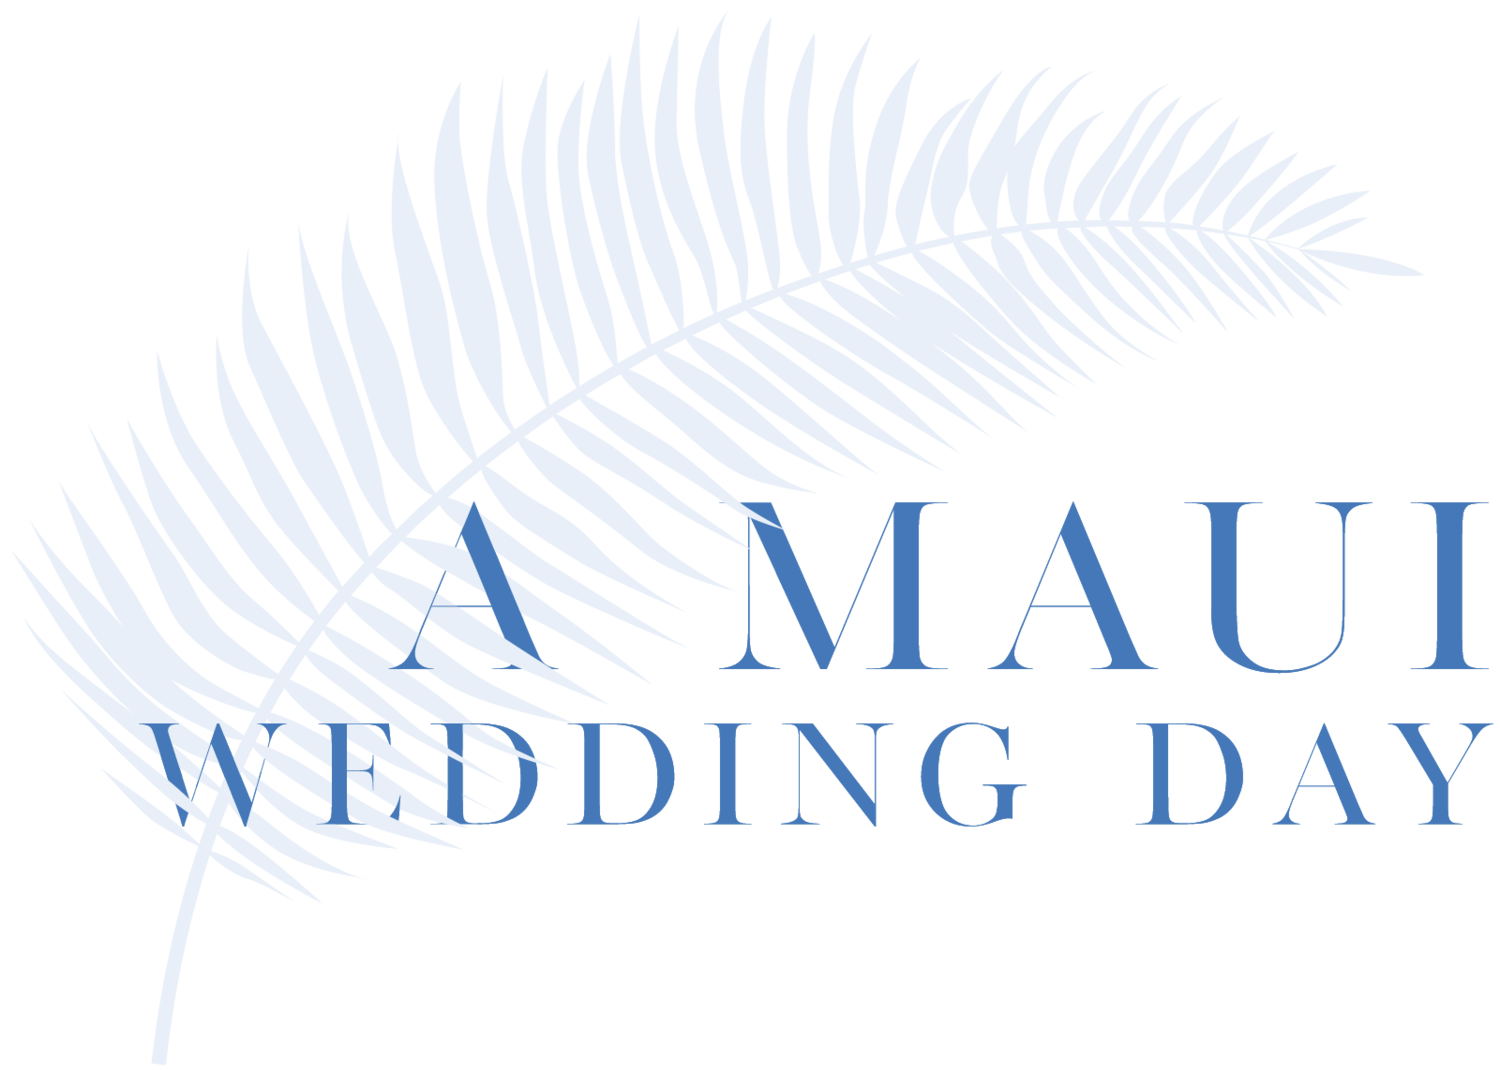 A Maui Wedding Day